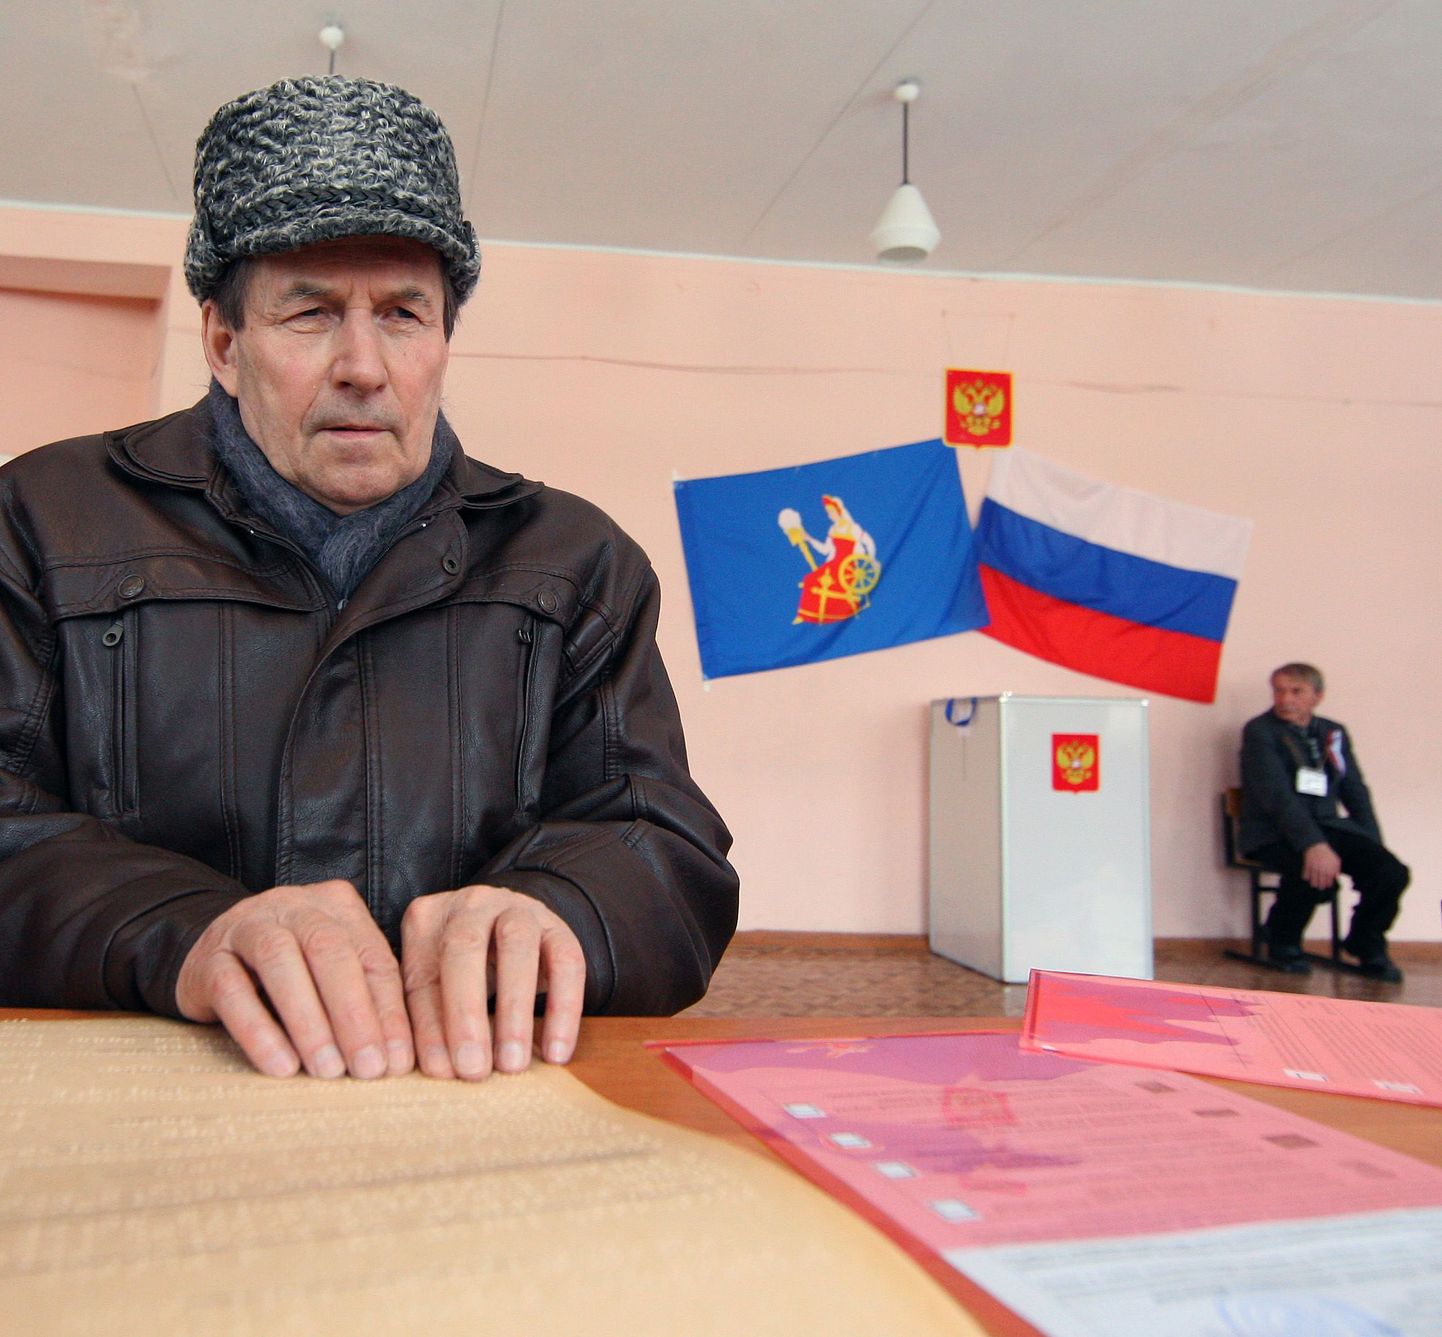 Голосование на региональных выборах в городе Иваново.